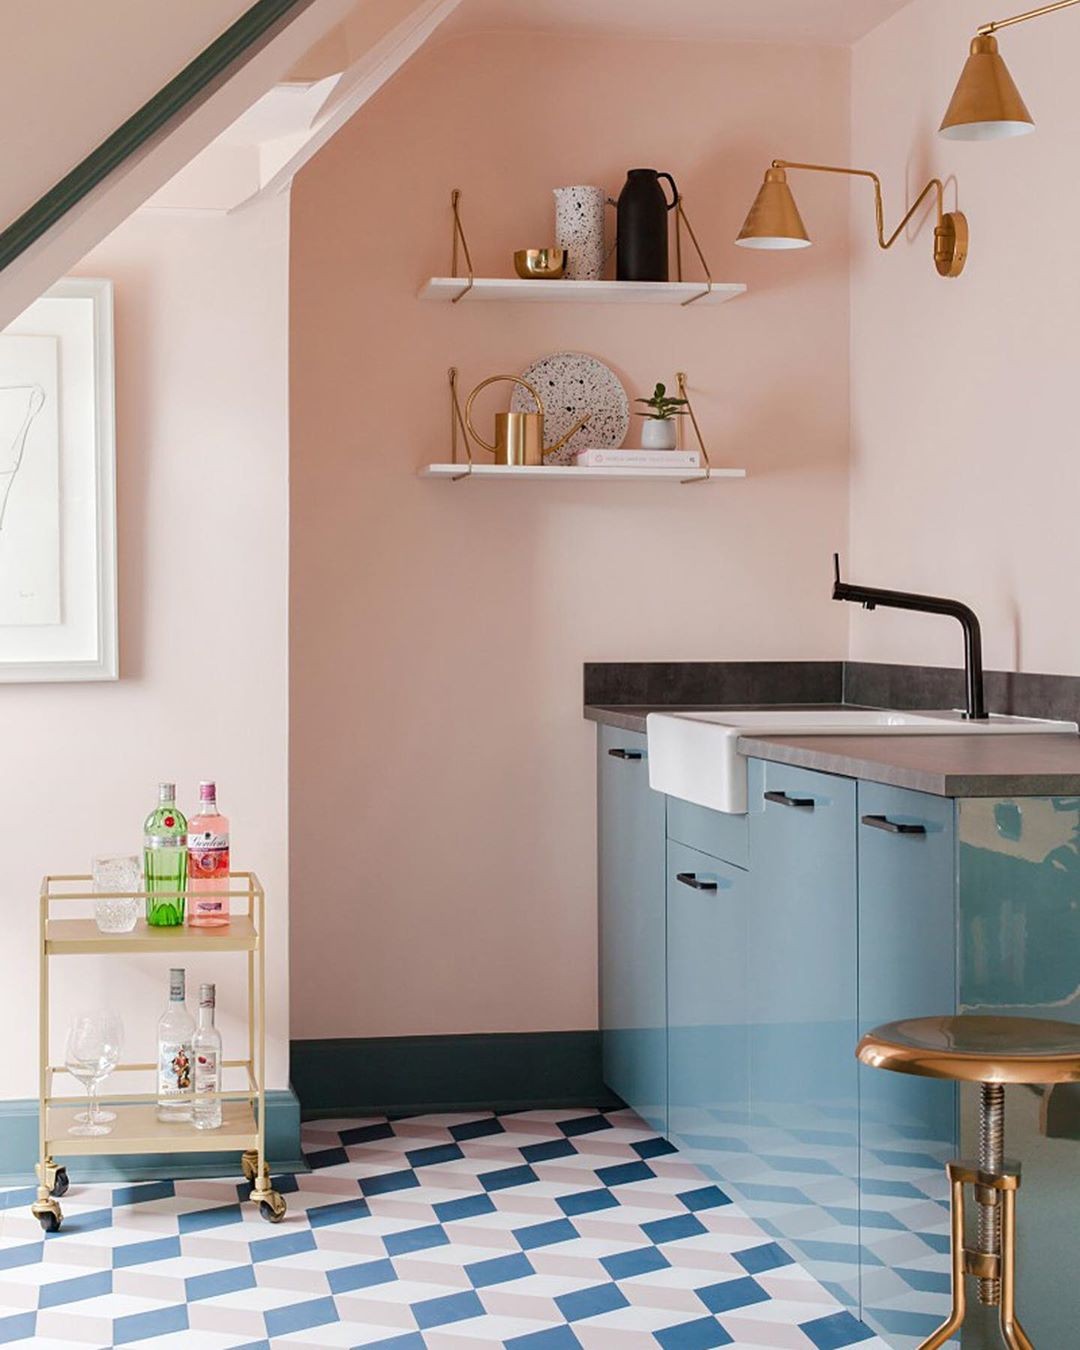 Décor do dia: cozinha rosa com armário embutido e piso colorido (Foto: Divulgação)